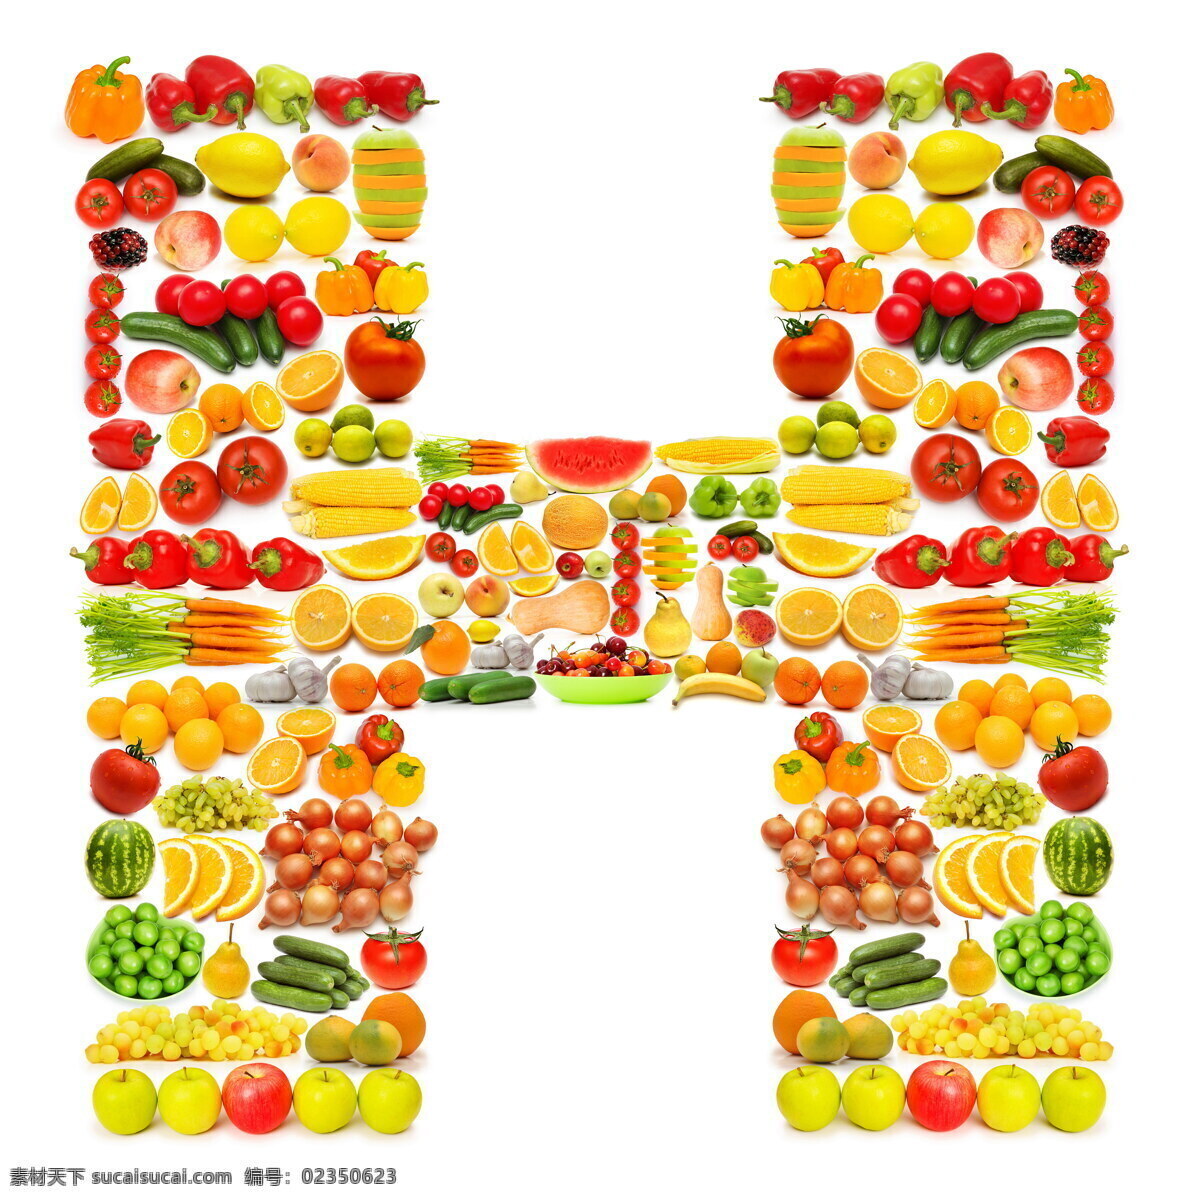 蔬菜水果 组成 字母 h 辣椒 葡萄 黄瓜 橙子 香蕉 蔬菜 水果 食物 水果蔬菜 餐饮美食 书画文字 文化艺术 白色